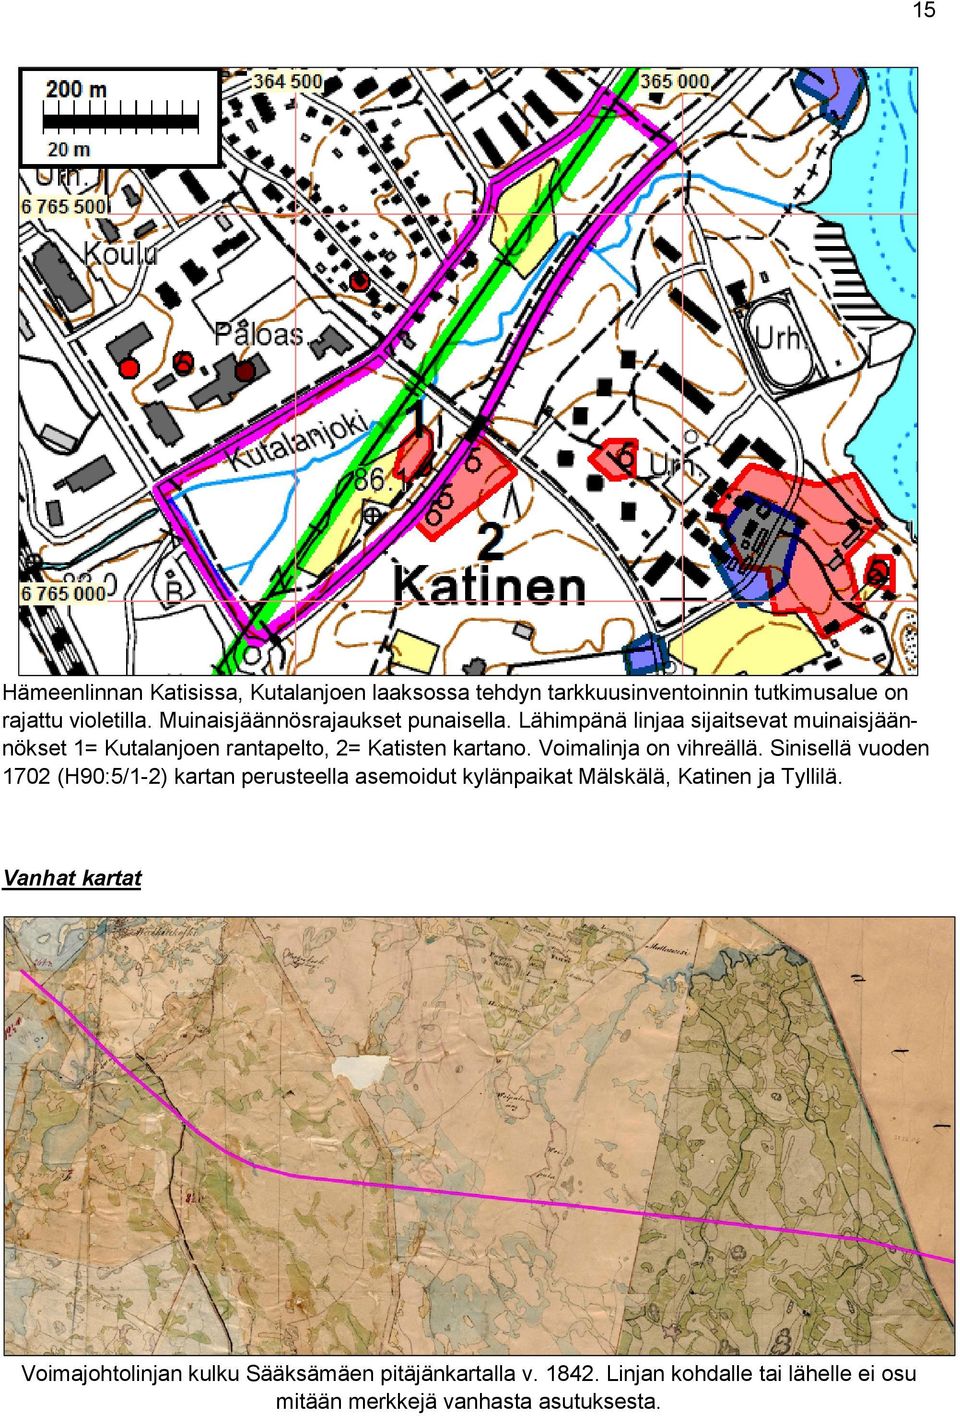 Voimalinja on vihreällä. Sinisellä vuoden 1702 (H90:5/1-2) kartan perusteella asemoidut kylänpaikat Mälskälä, Katinen ja Tyllilä.